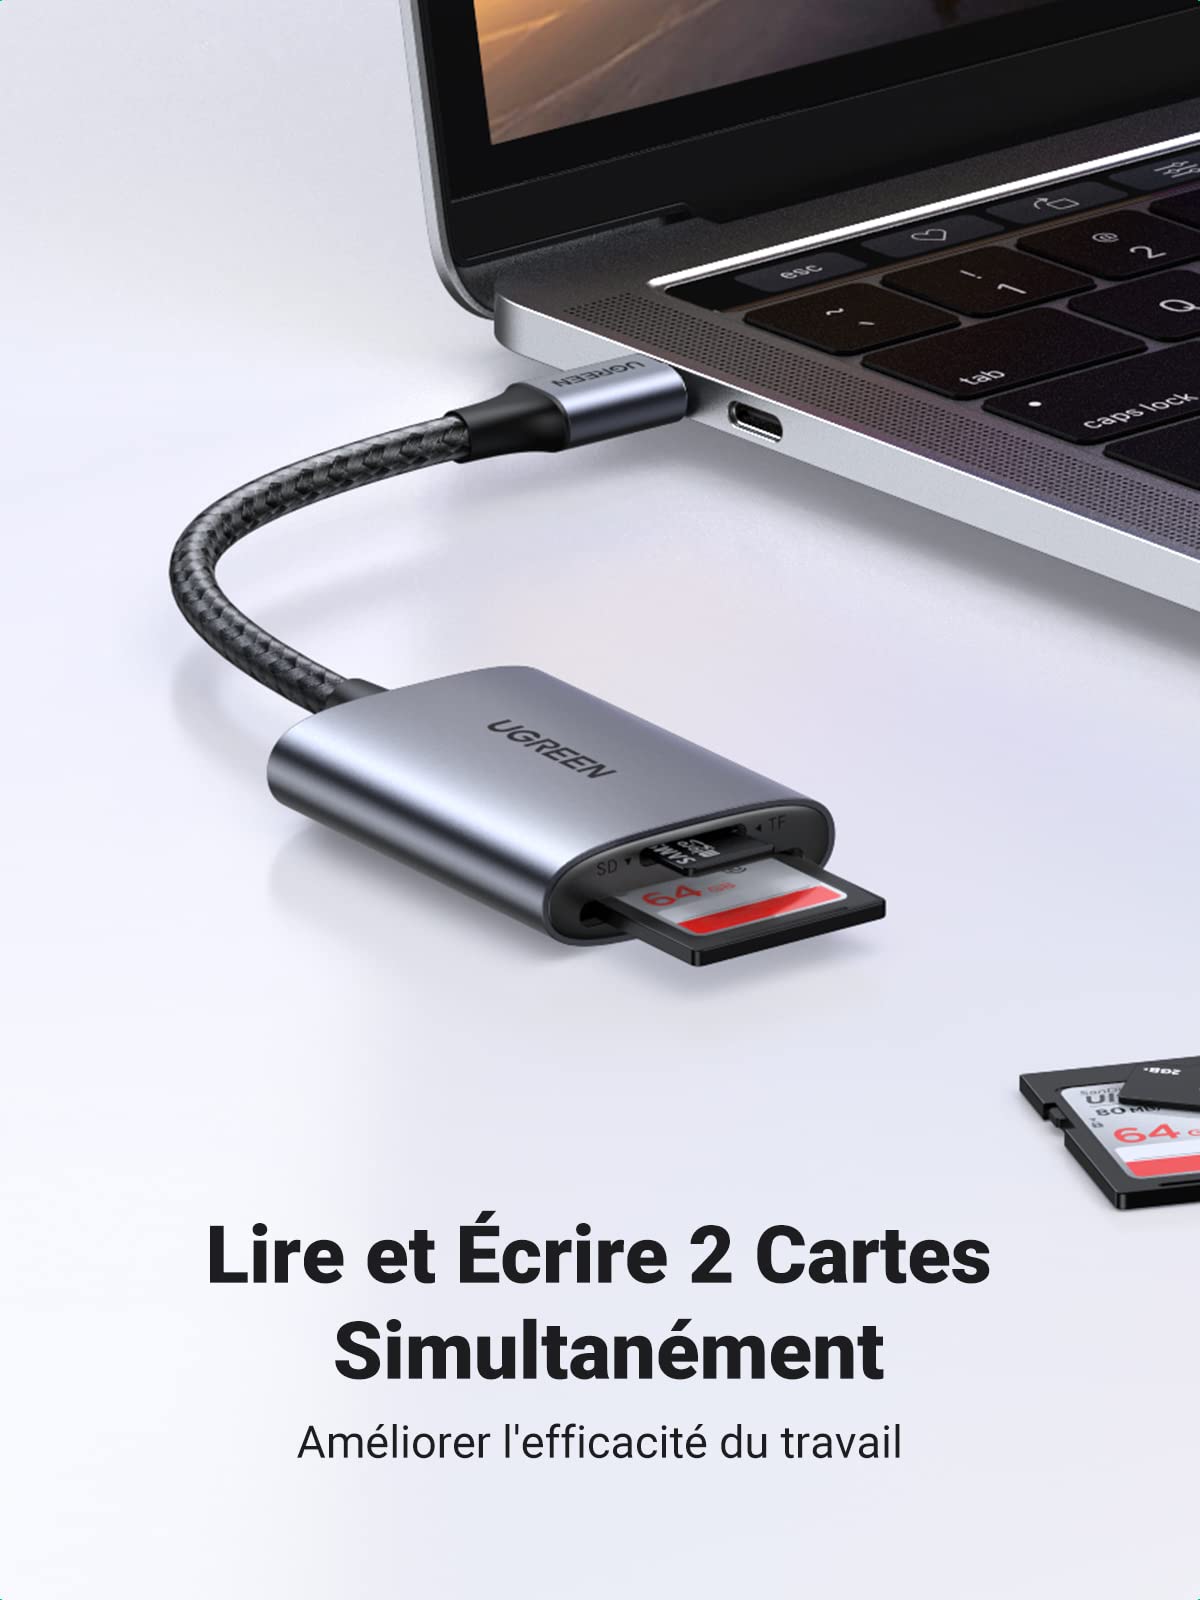 uni Lecteur de Carte SD, Lecteur de Carte Mémoire USB C, Adaptateur USB 3.0  pour Prend en Charge SD/Micro SD/SDHC/SDXC/MMC, Compatible avec MacBook Pro  Air, iPad Pro Air, Galaxy S22, Pixel, XPS